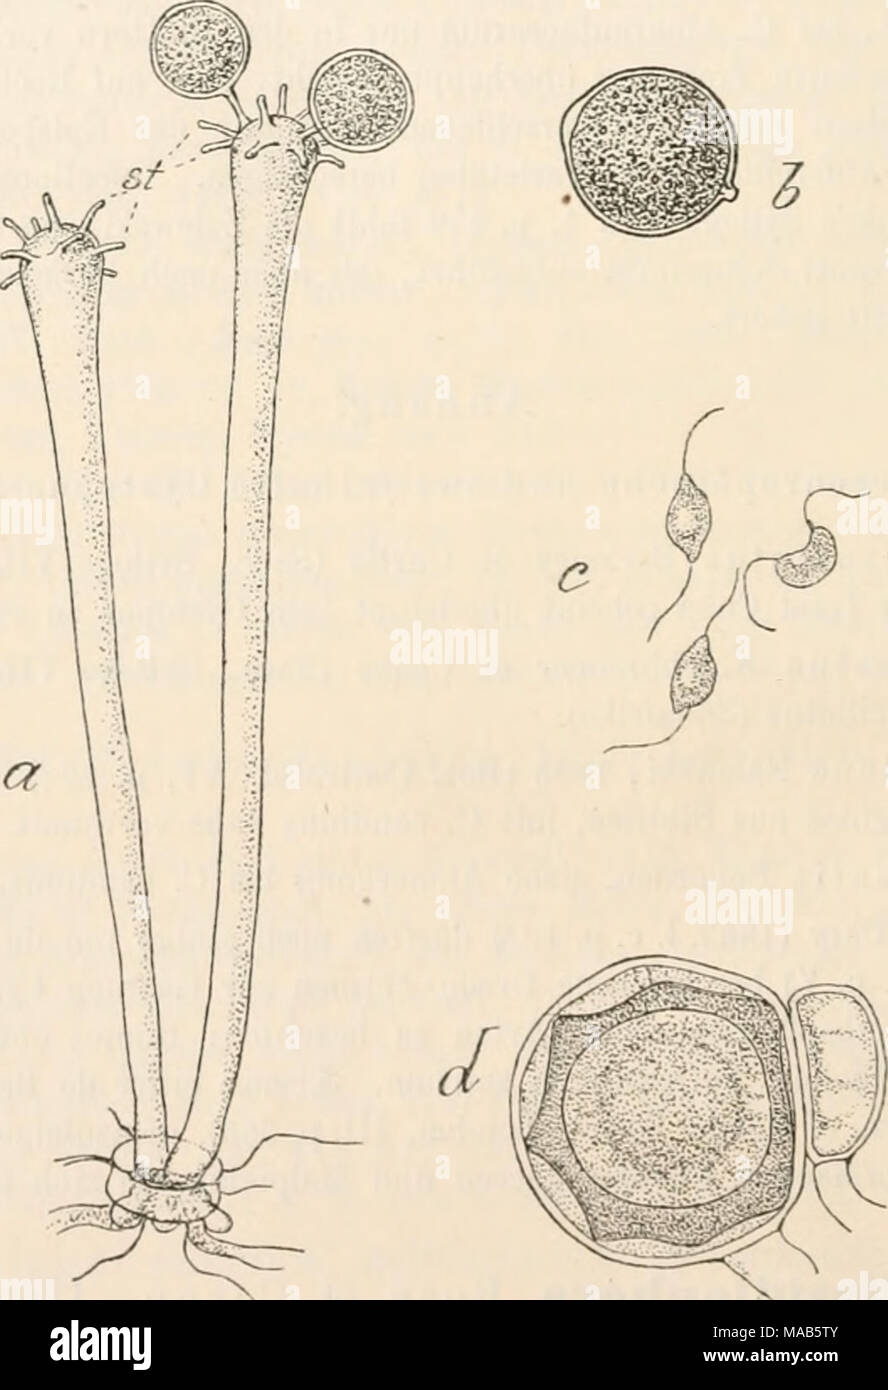 . Dr. L. Rabenhorst's Kryptogamen-Flora von Deutschland, Oesterreich und der Schweiz . Basidiophora. — B. cntospora. a Zwei Conidienträger aus einer Spaltöffnung hervorbrechend, am keuligen Scheitel mit kurzen Sterigmen (sf) besetzt, die je eine Conidie bilden (Vergr. 230, nach der Natur), b Eine citronenförmige Conidie mit Scheitelpapille und kurzem Stielchenansatz (Vergr. 540, nach der Natur), c Schwärmsporen, bei der Keimung der Conidien entstehend (Vergr. 550, nach Koze u. Cornu). d Ein Oogon mit reifer Oospore, deren Exospor faltig verdickt ist, Periplasnia vorhanden, rechts das Anthoridi Stock Photo